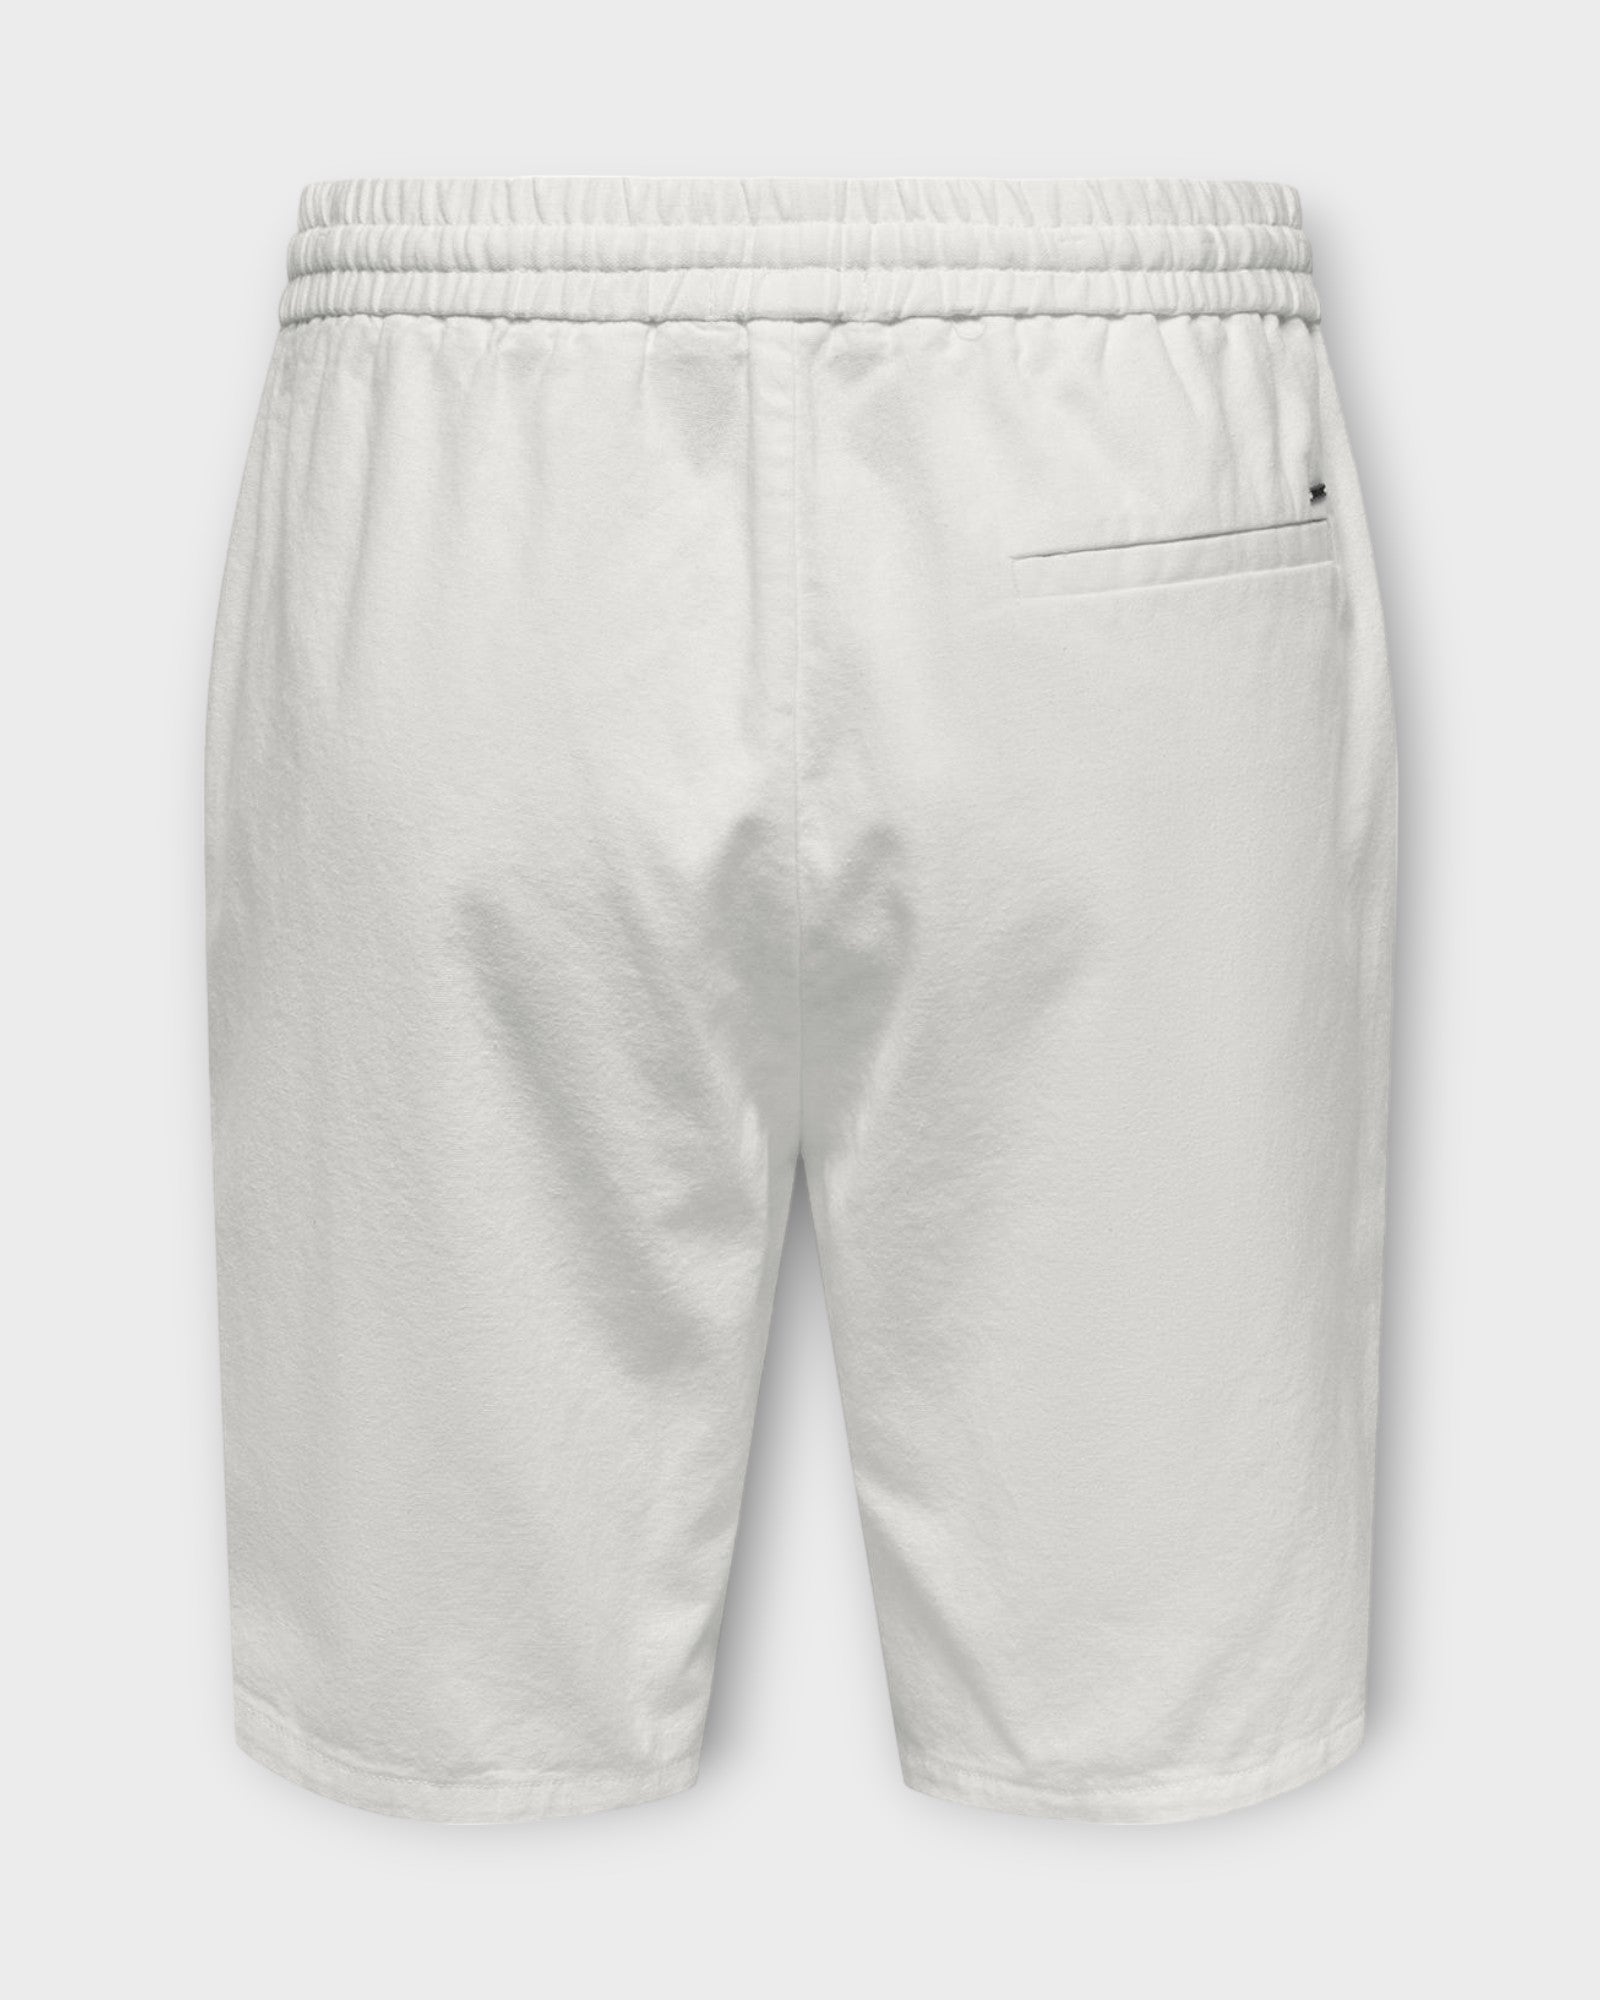 Linus 0007  Cot Lin Shorts Noos Bright White, Hvide hør shorts til mænd fra Jack and Jones. Her set bagfra.